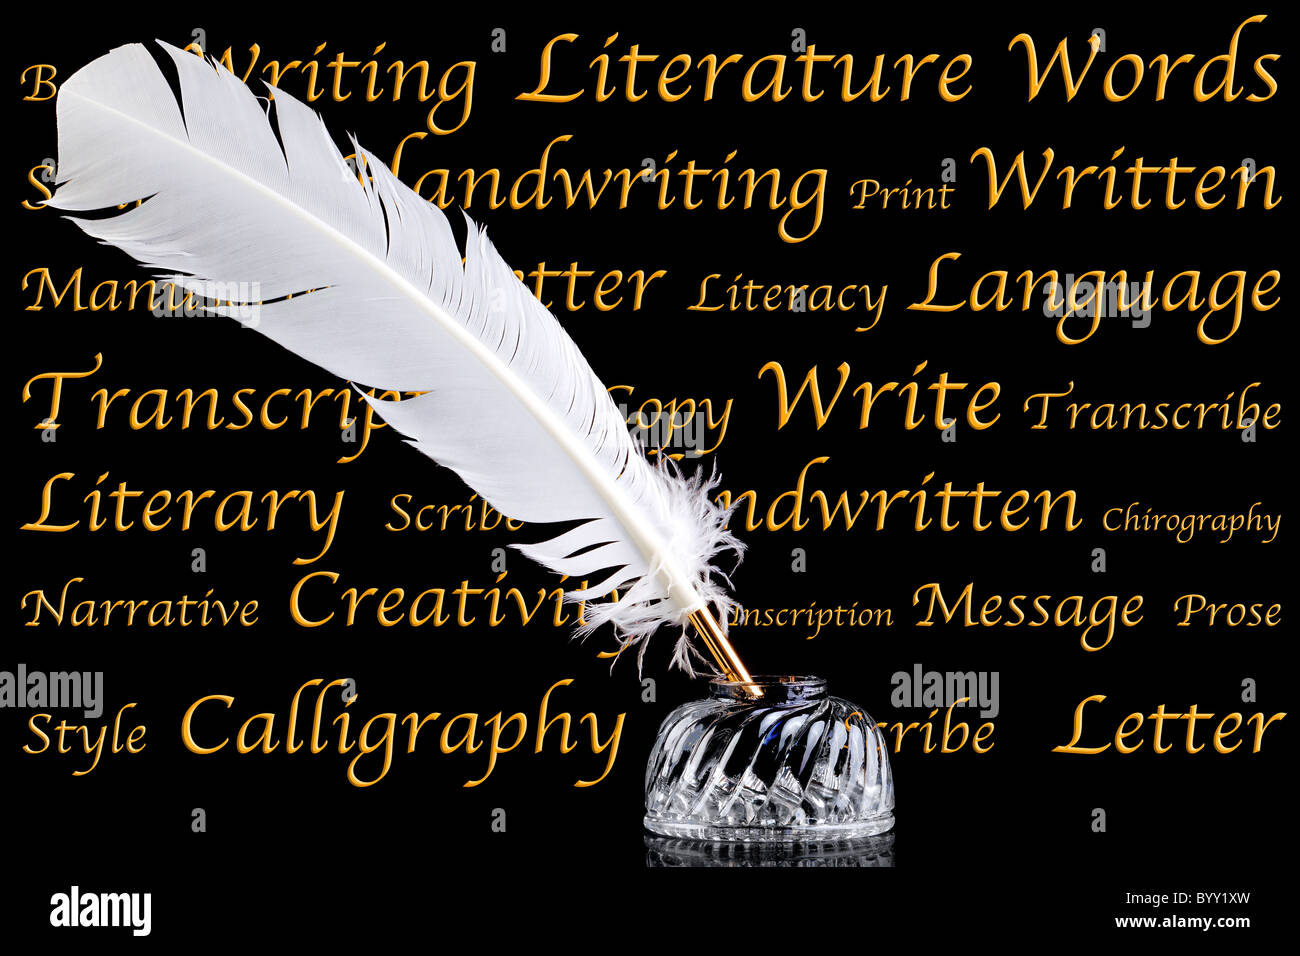 La plume d'une plume blanche et cristal de verre et d'encre sur un fond noir avec des mots associés à la littérature et l'écriture. Banque D'Images